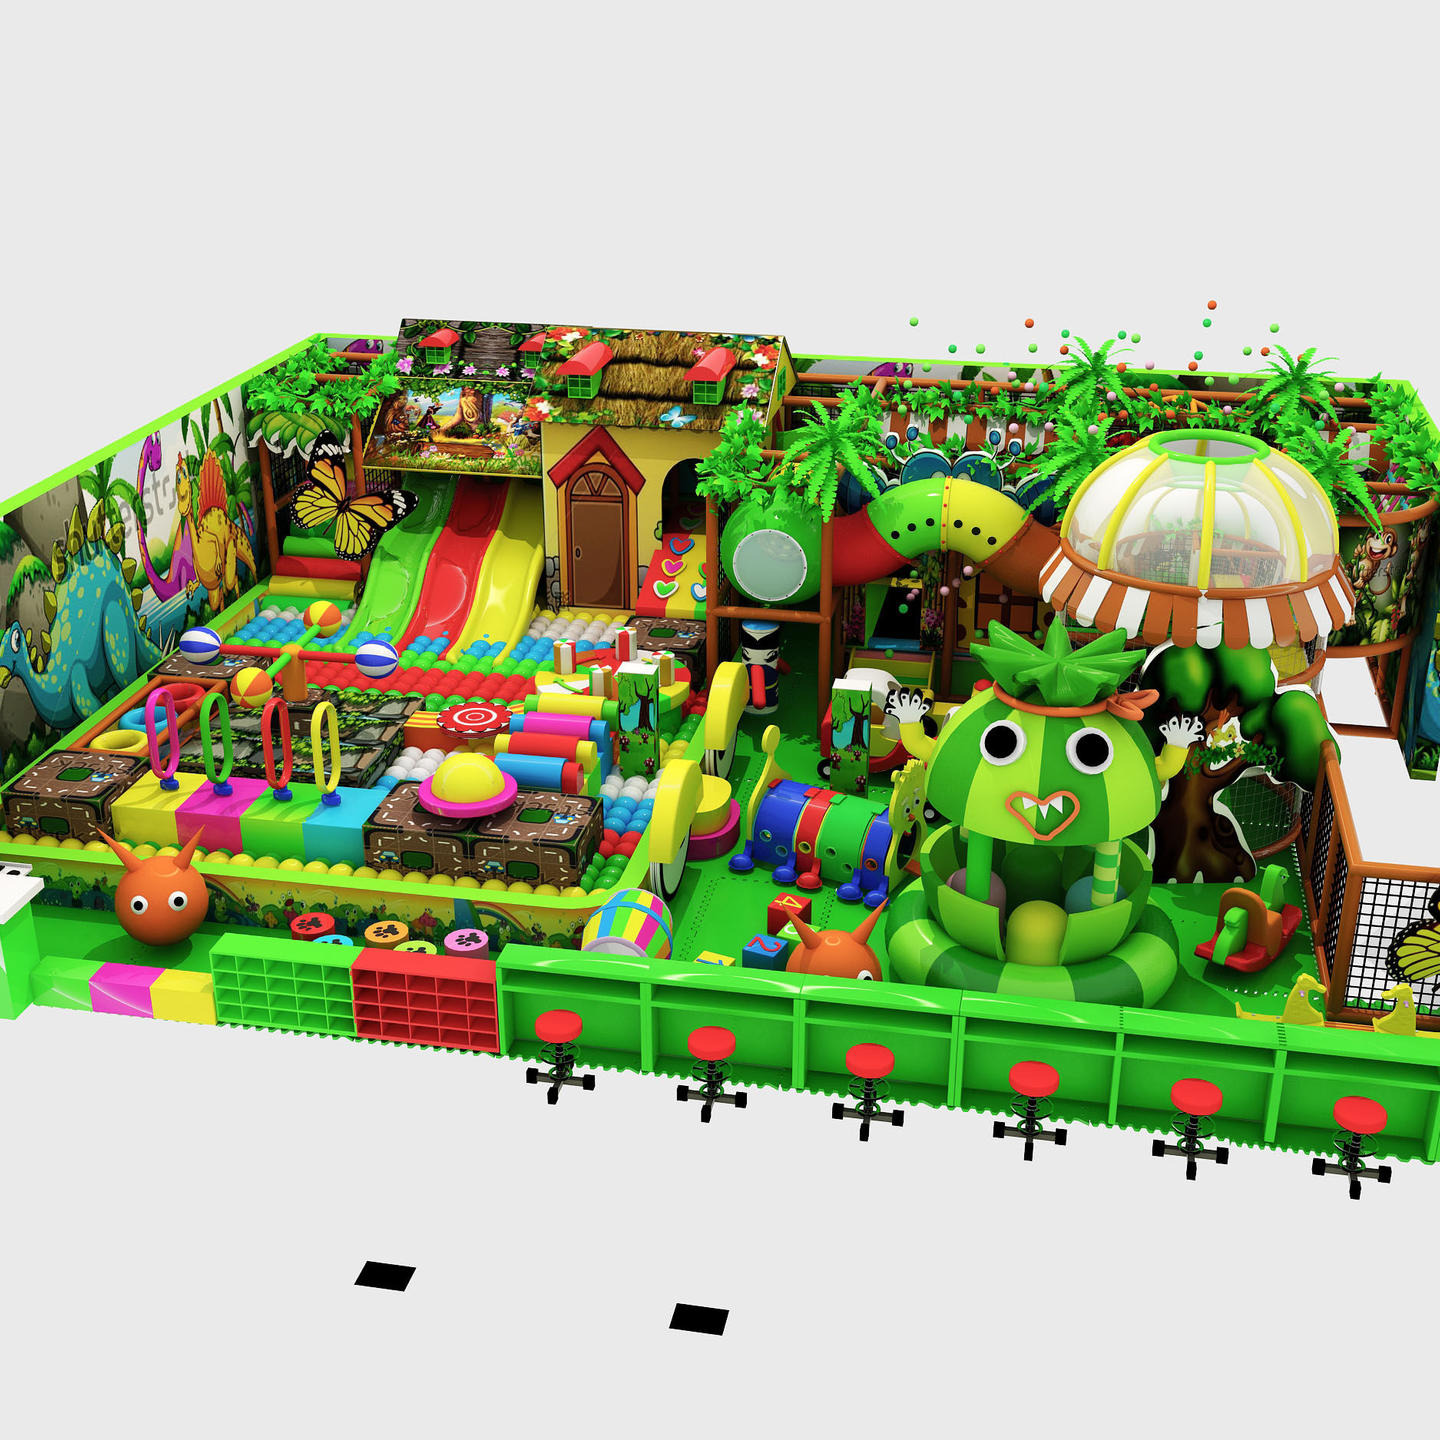 森林淘气堡儿童设施室内大型儿童娱乐设备 淘气堡儿童乐园 游乐场图片